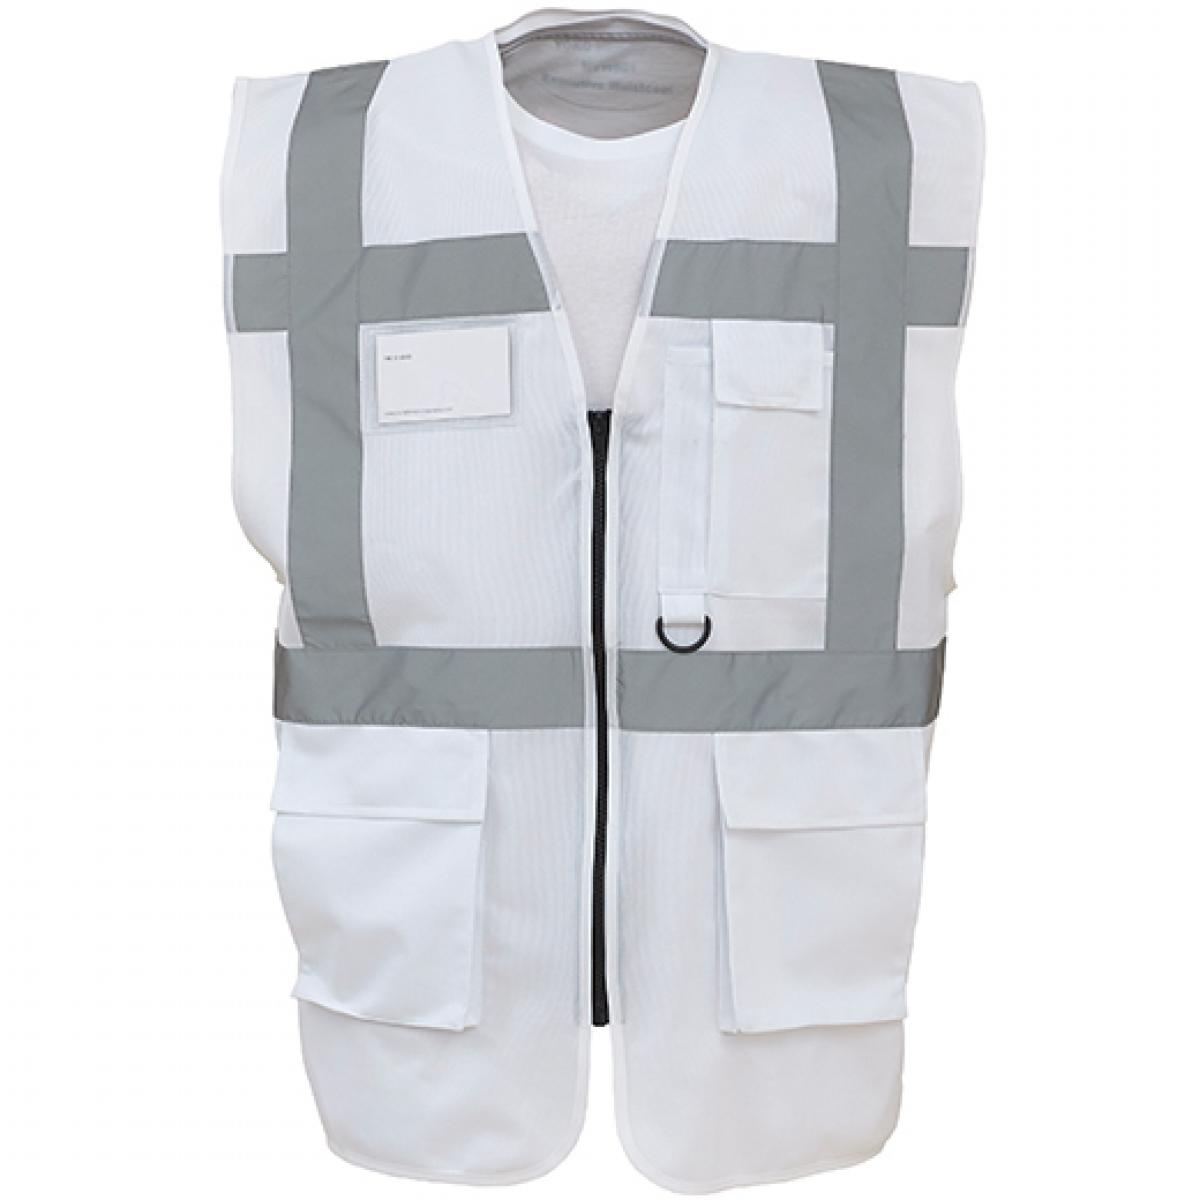 Hersteller: YOKO Herstellernummer: HVW801 Artikelbezeichnung: Herren Multi-Functional Executive Waistcoat Farbe: White